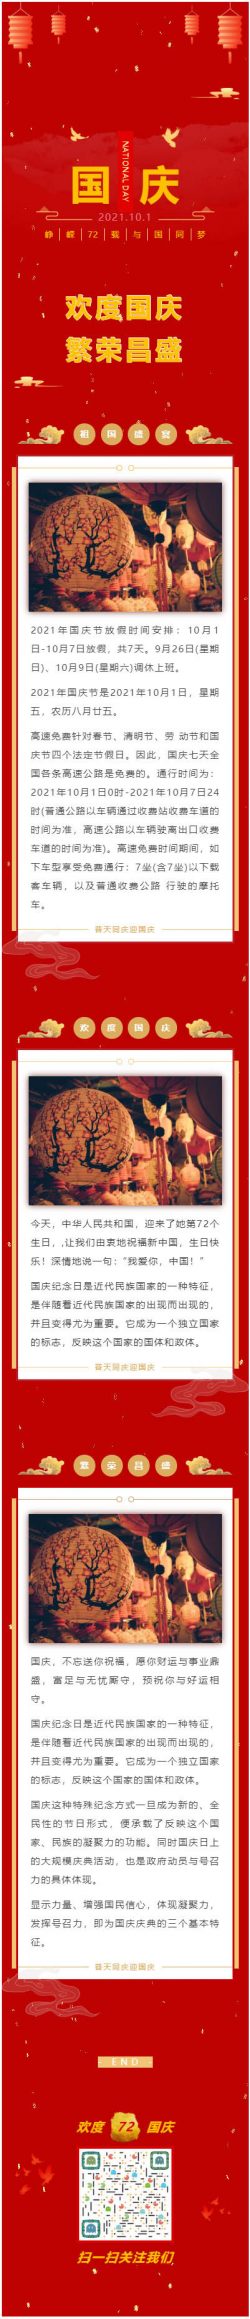 微信公众号模板中华人民共和国祝福新中国国庆纪念日生日快乐国庆节模板